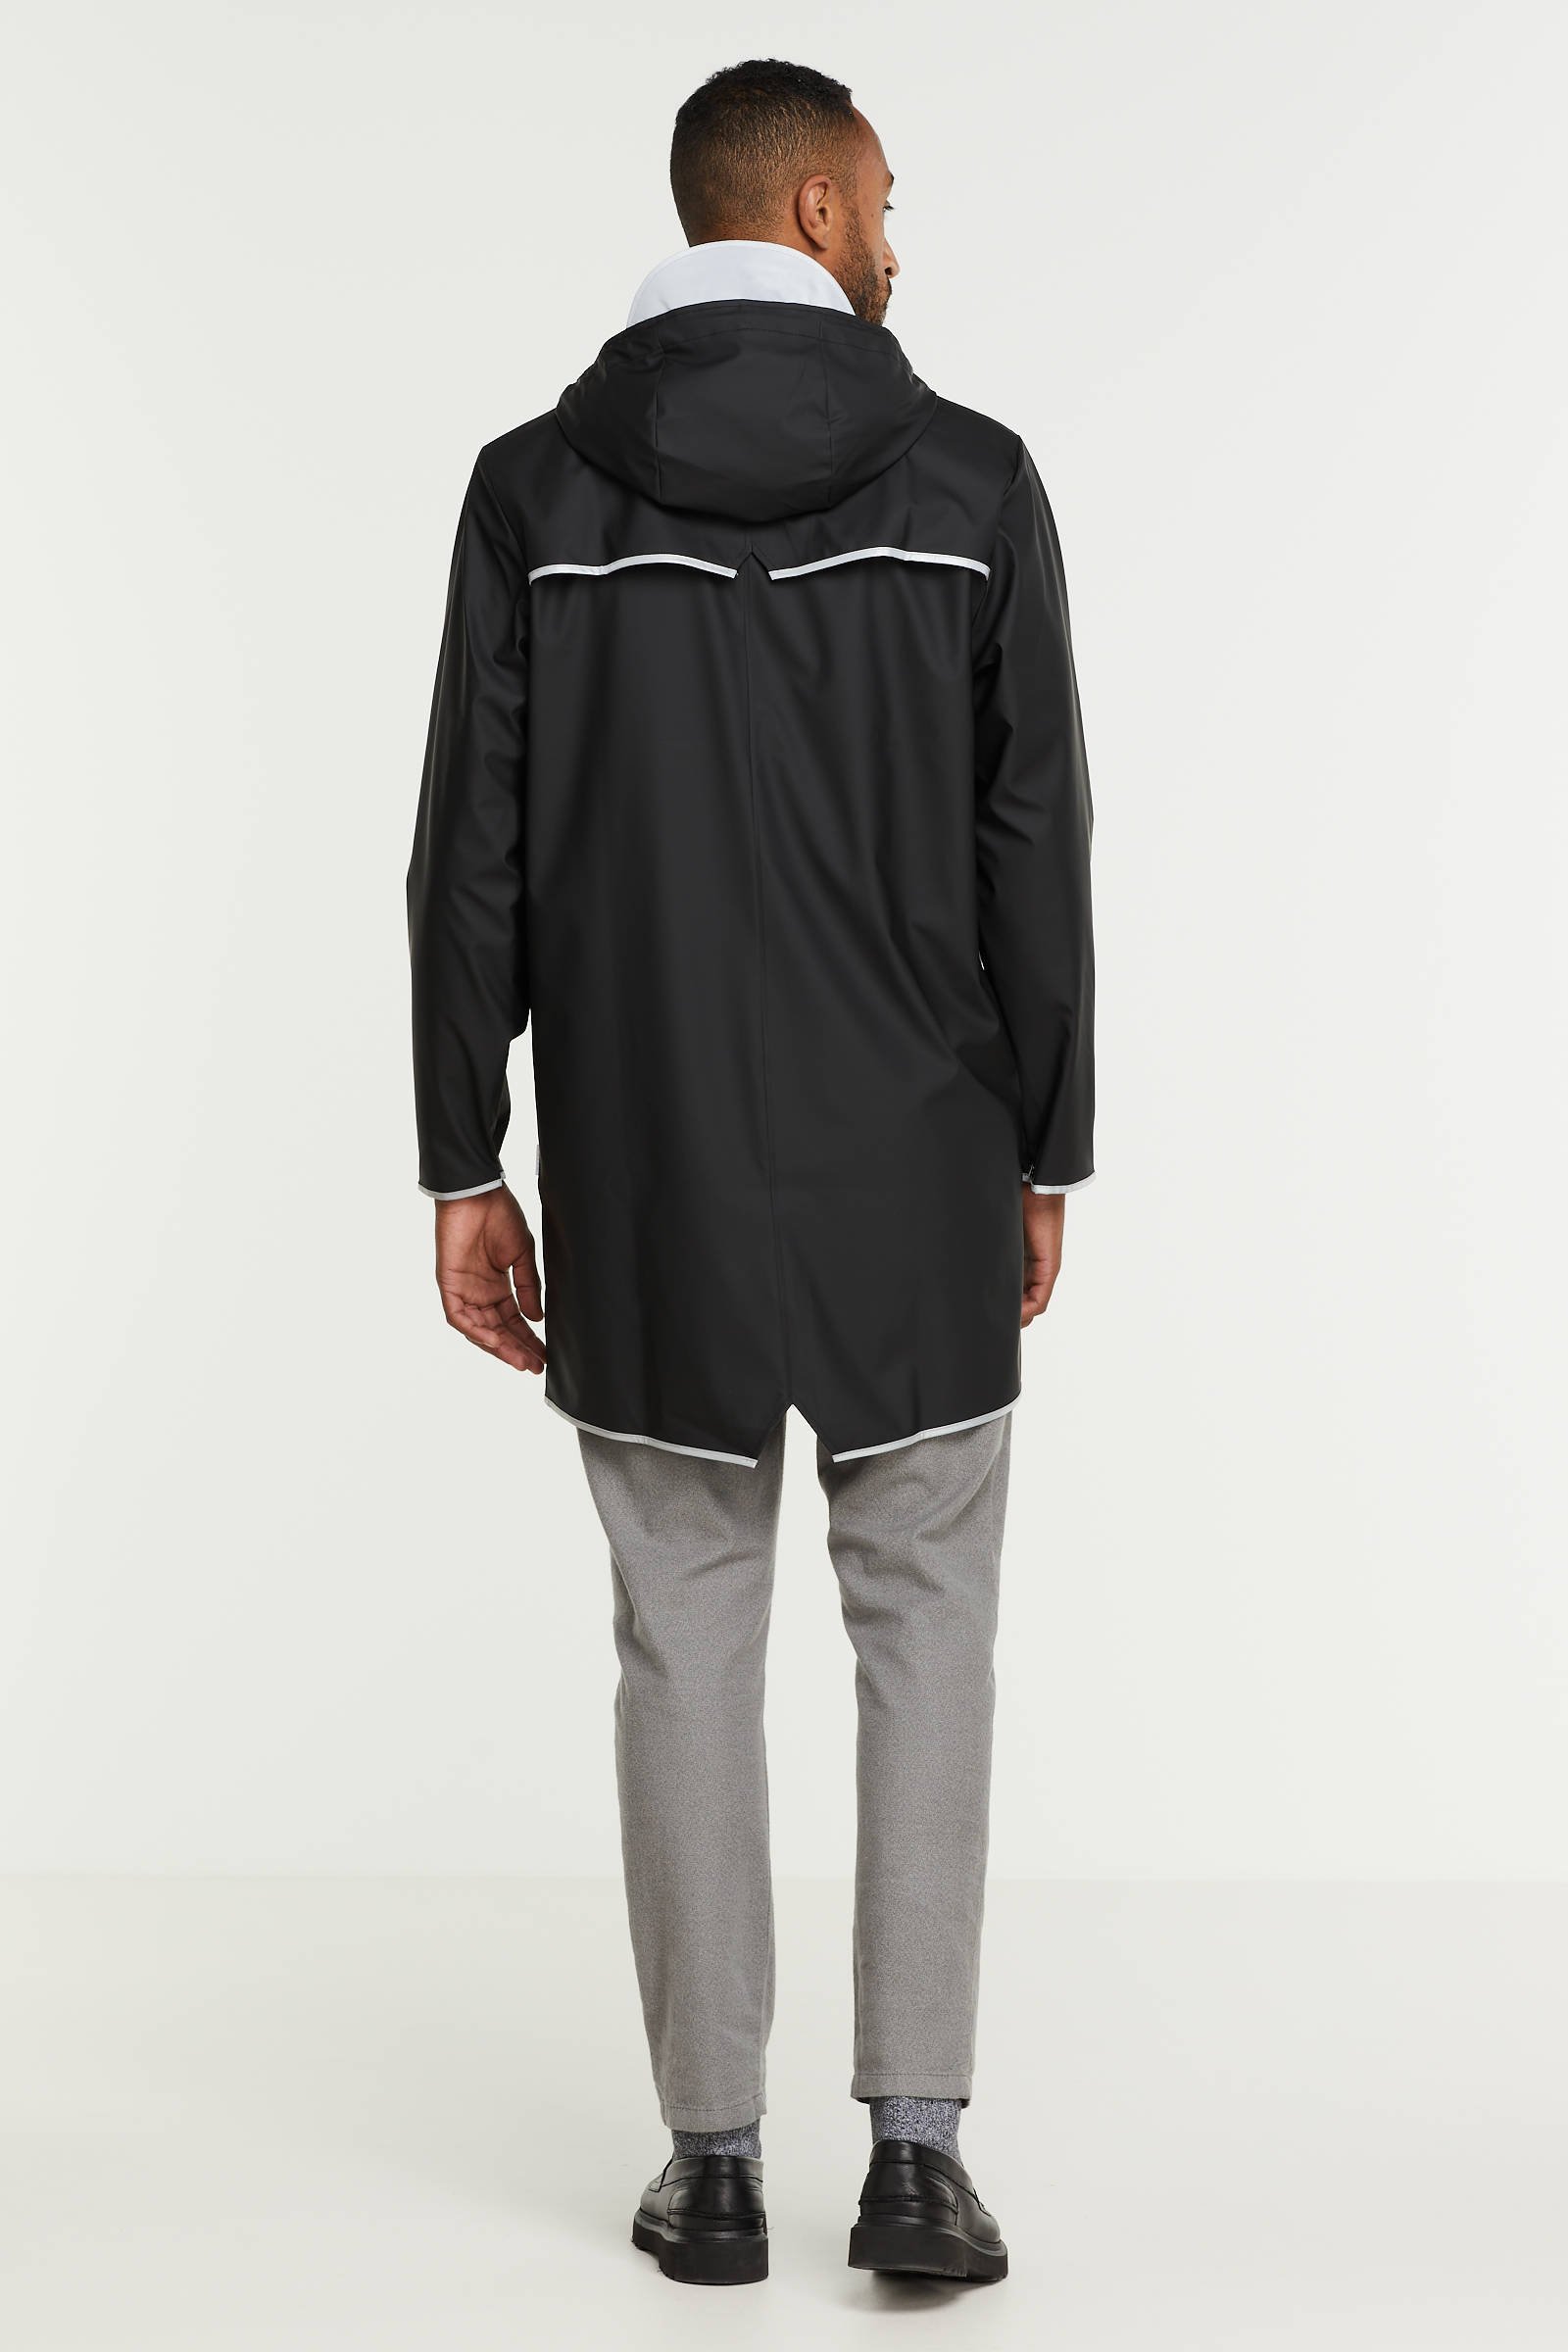 Rains Long Jacket Reflective XL black reflective online kopen